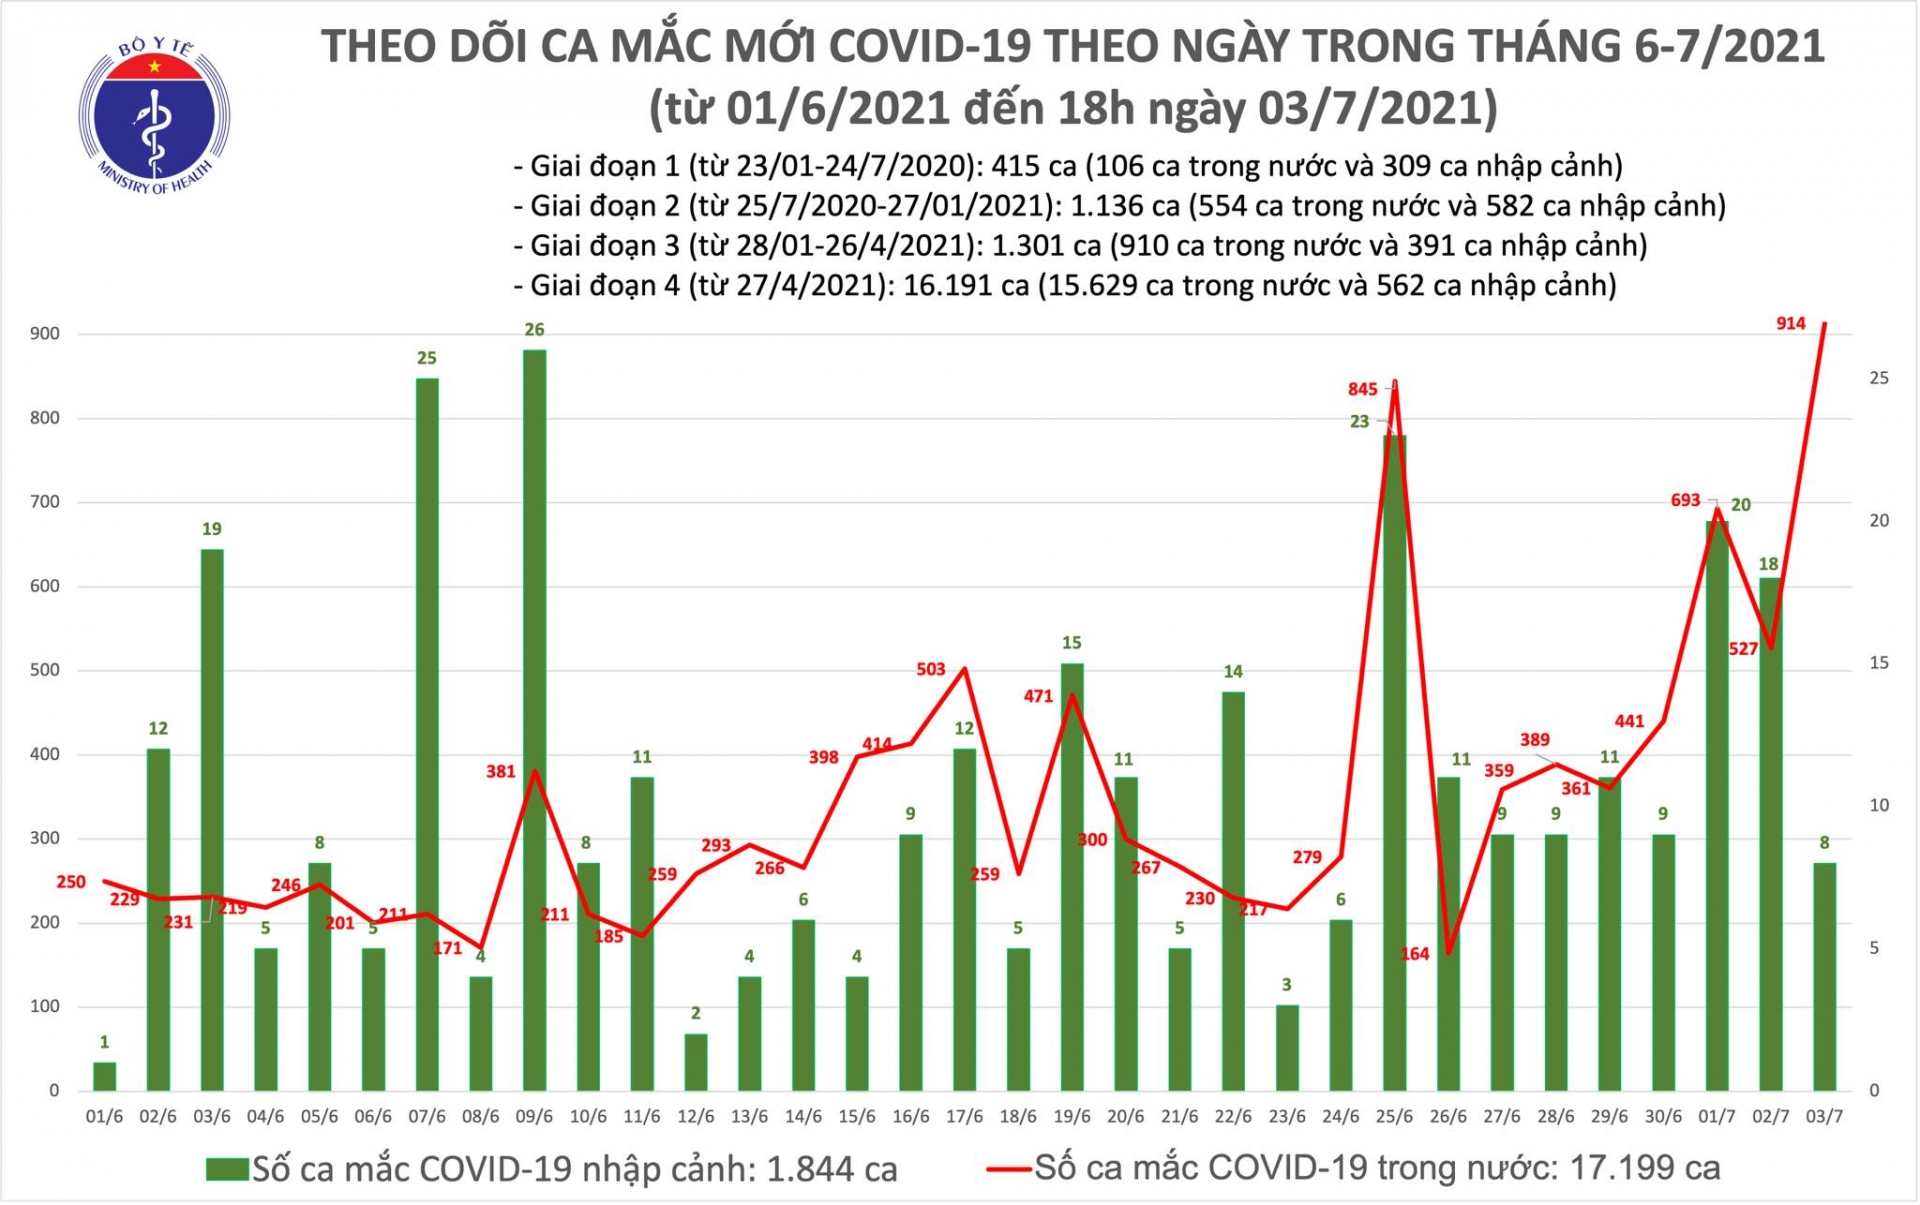 Tối 3/7: Thêm 353 ca mắc COVID-19, TP Hồ Chí Minh nhiều nhất là 250 ca